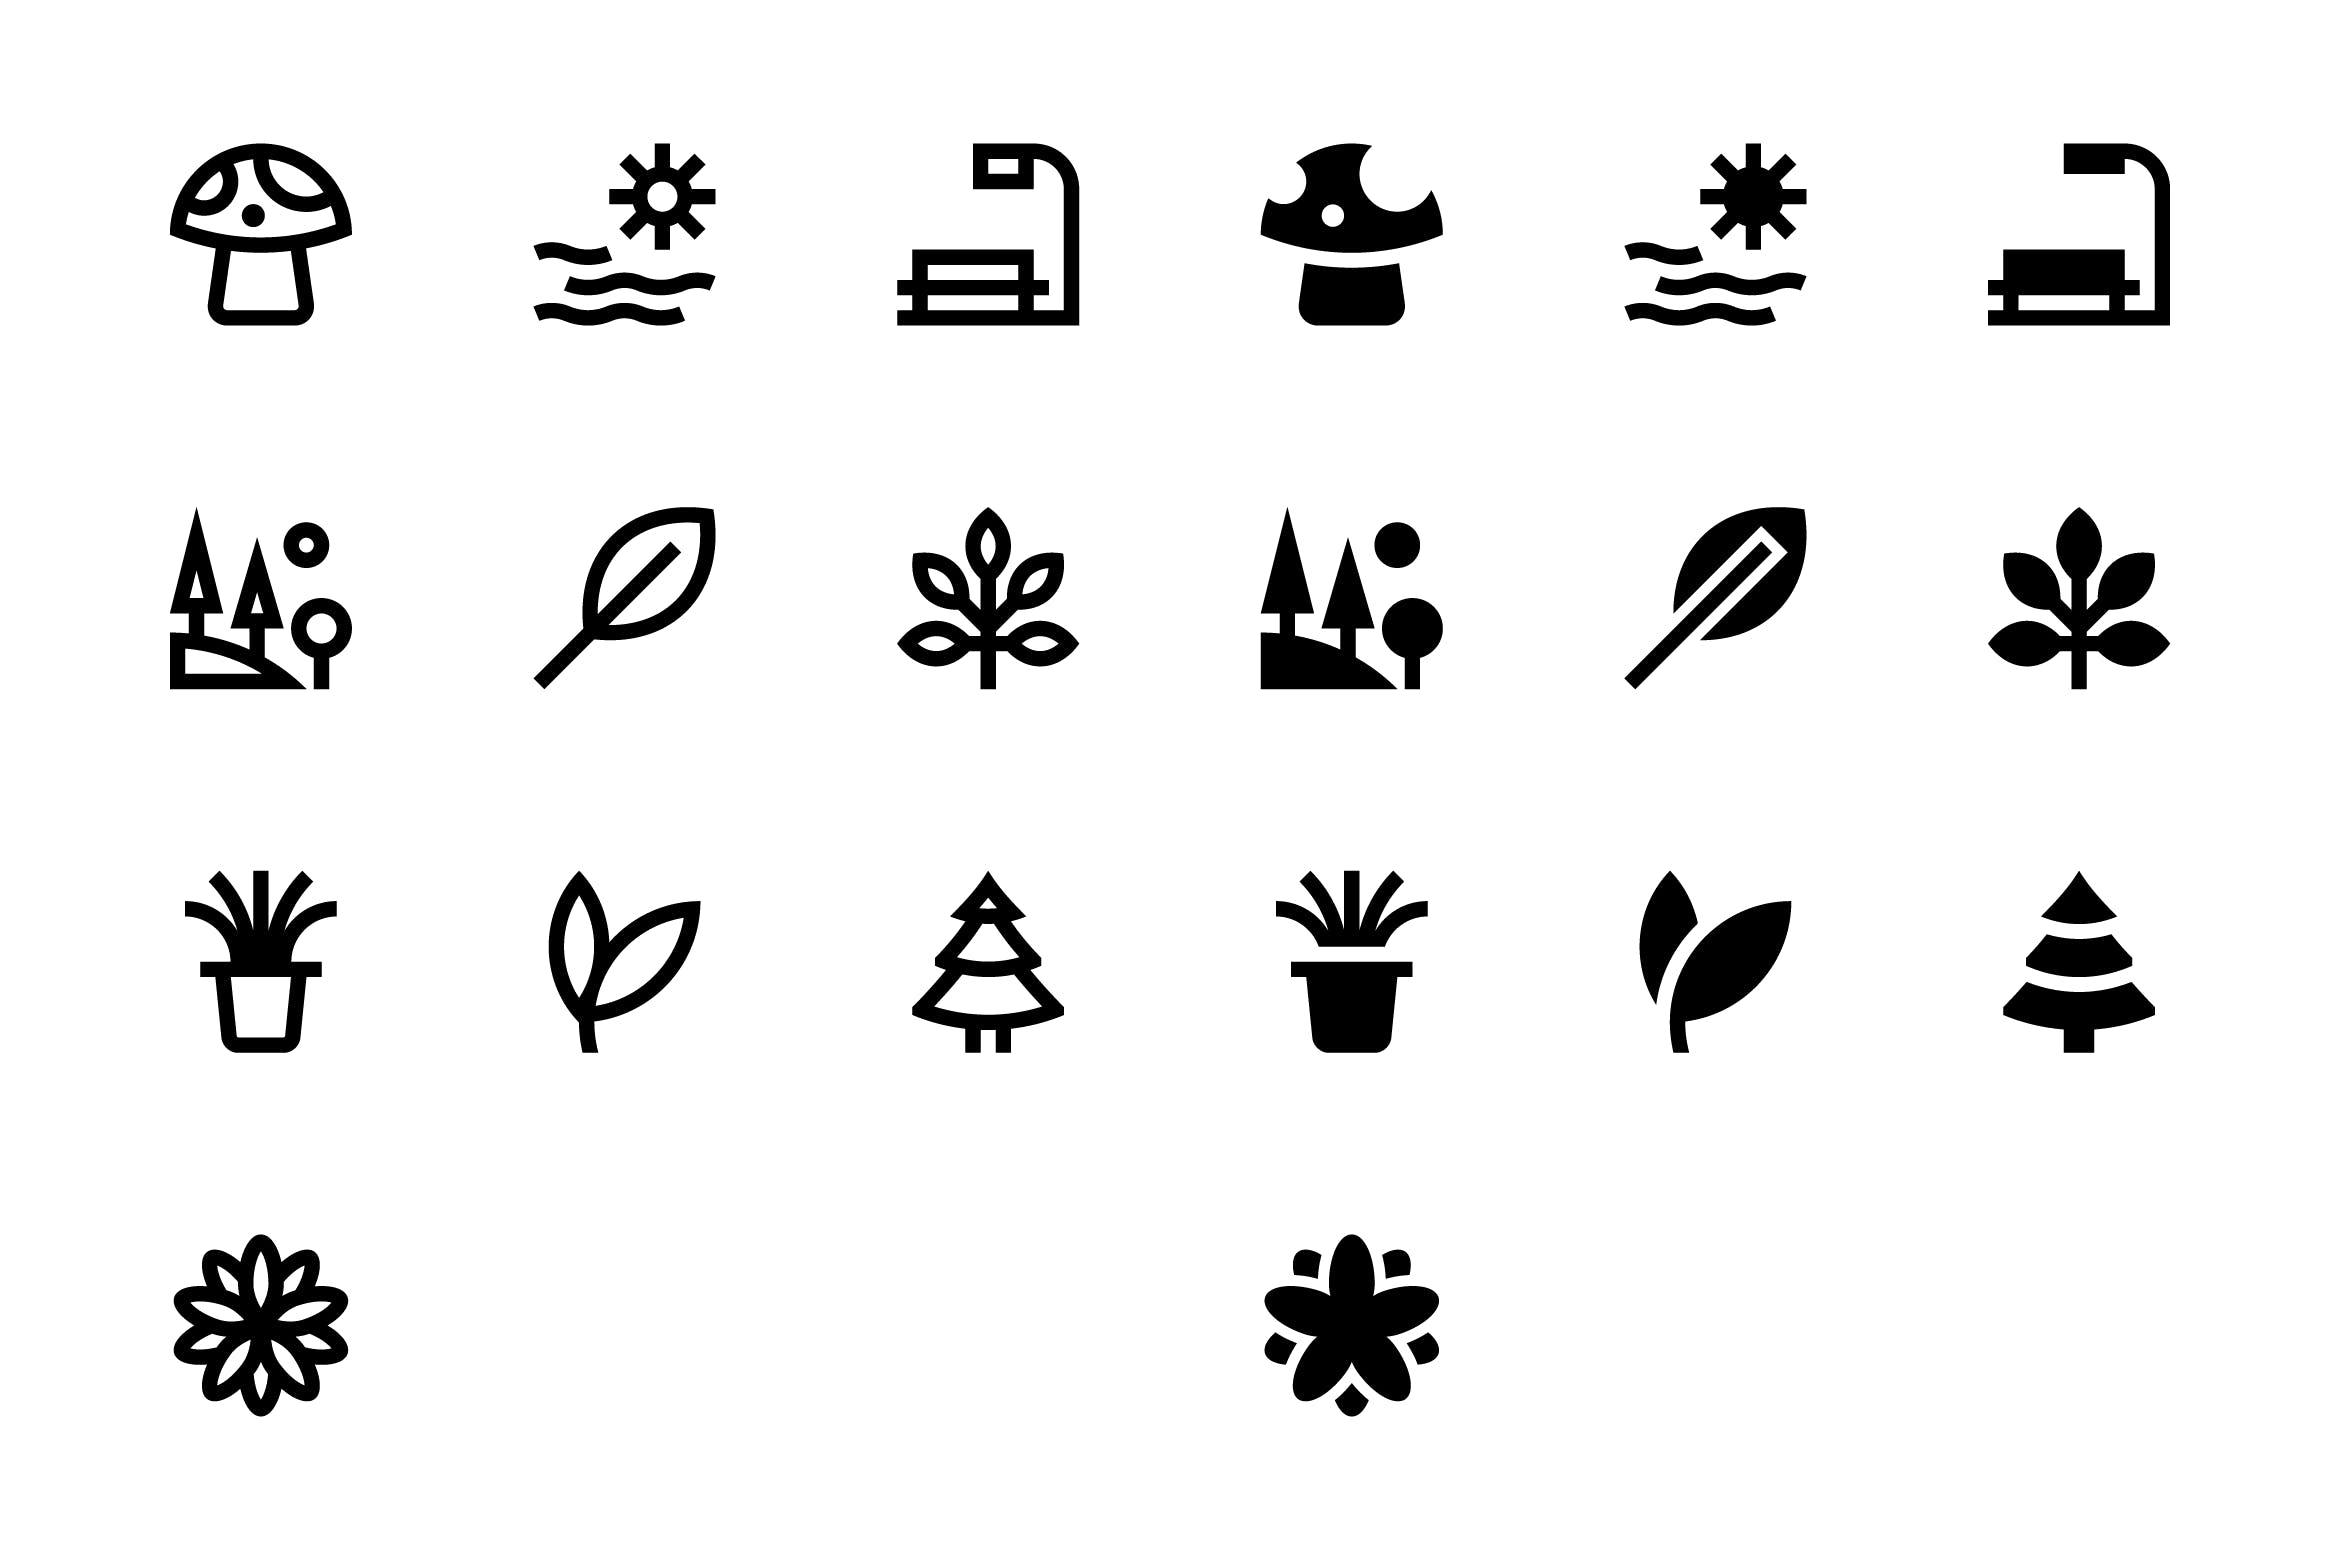 20枚自然主题SVG矢量非凡图库精选图标#3 20 Nature Icons #3插图